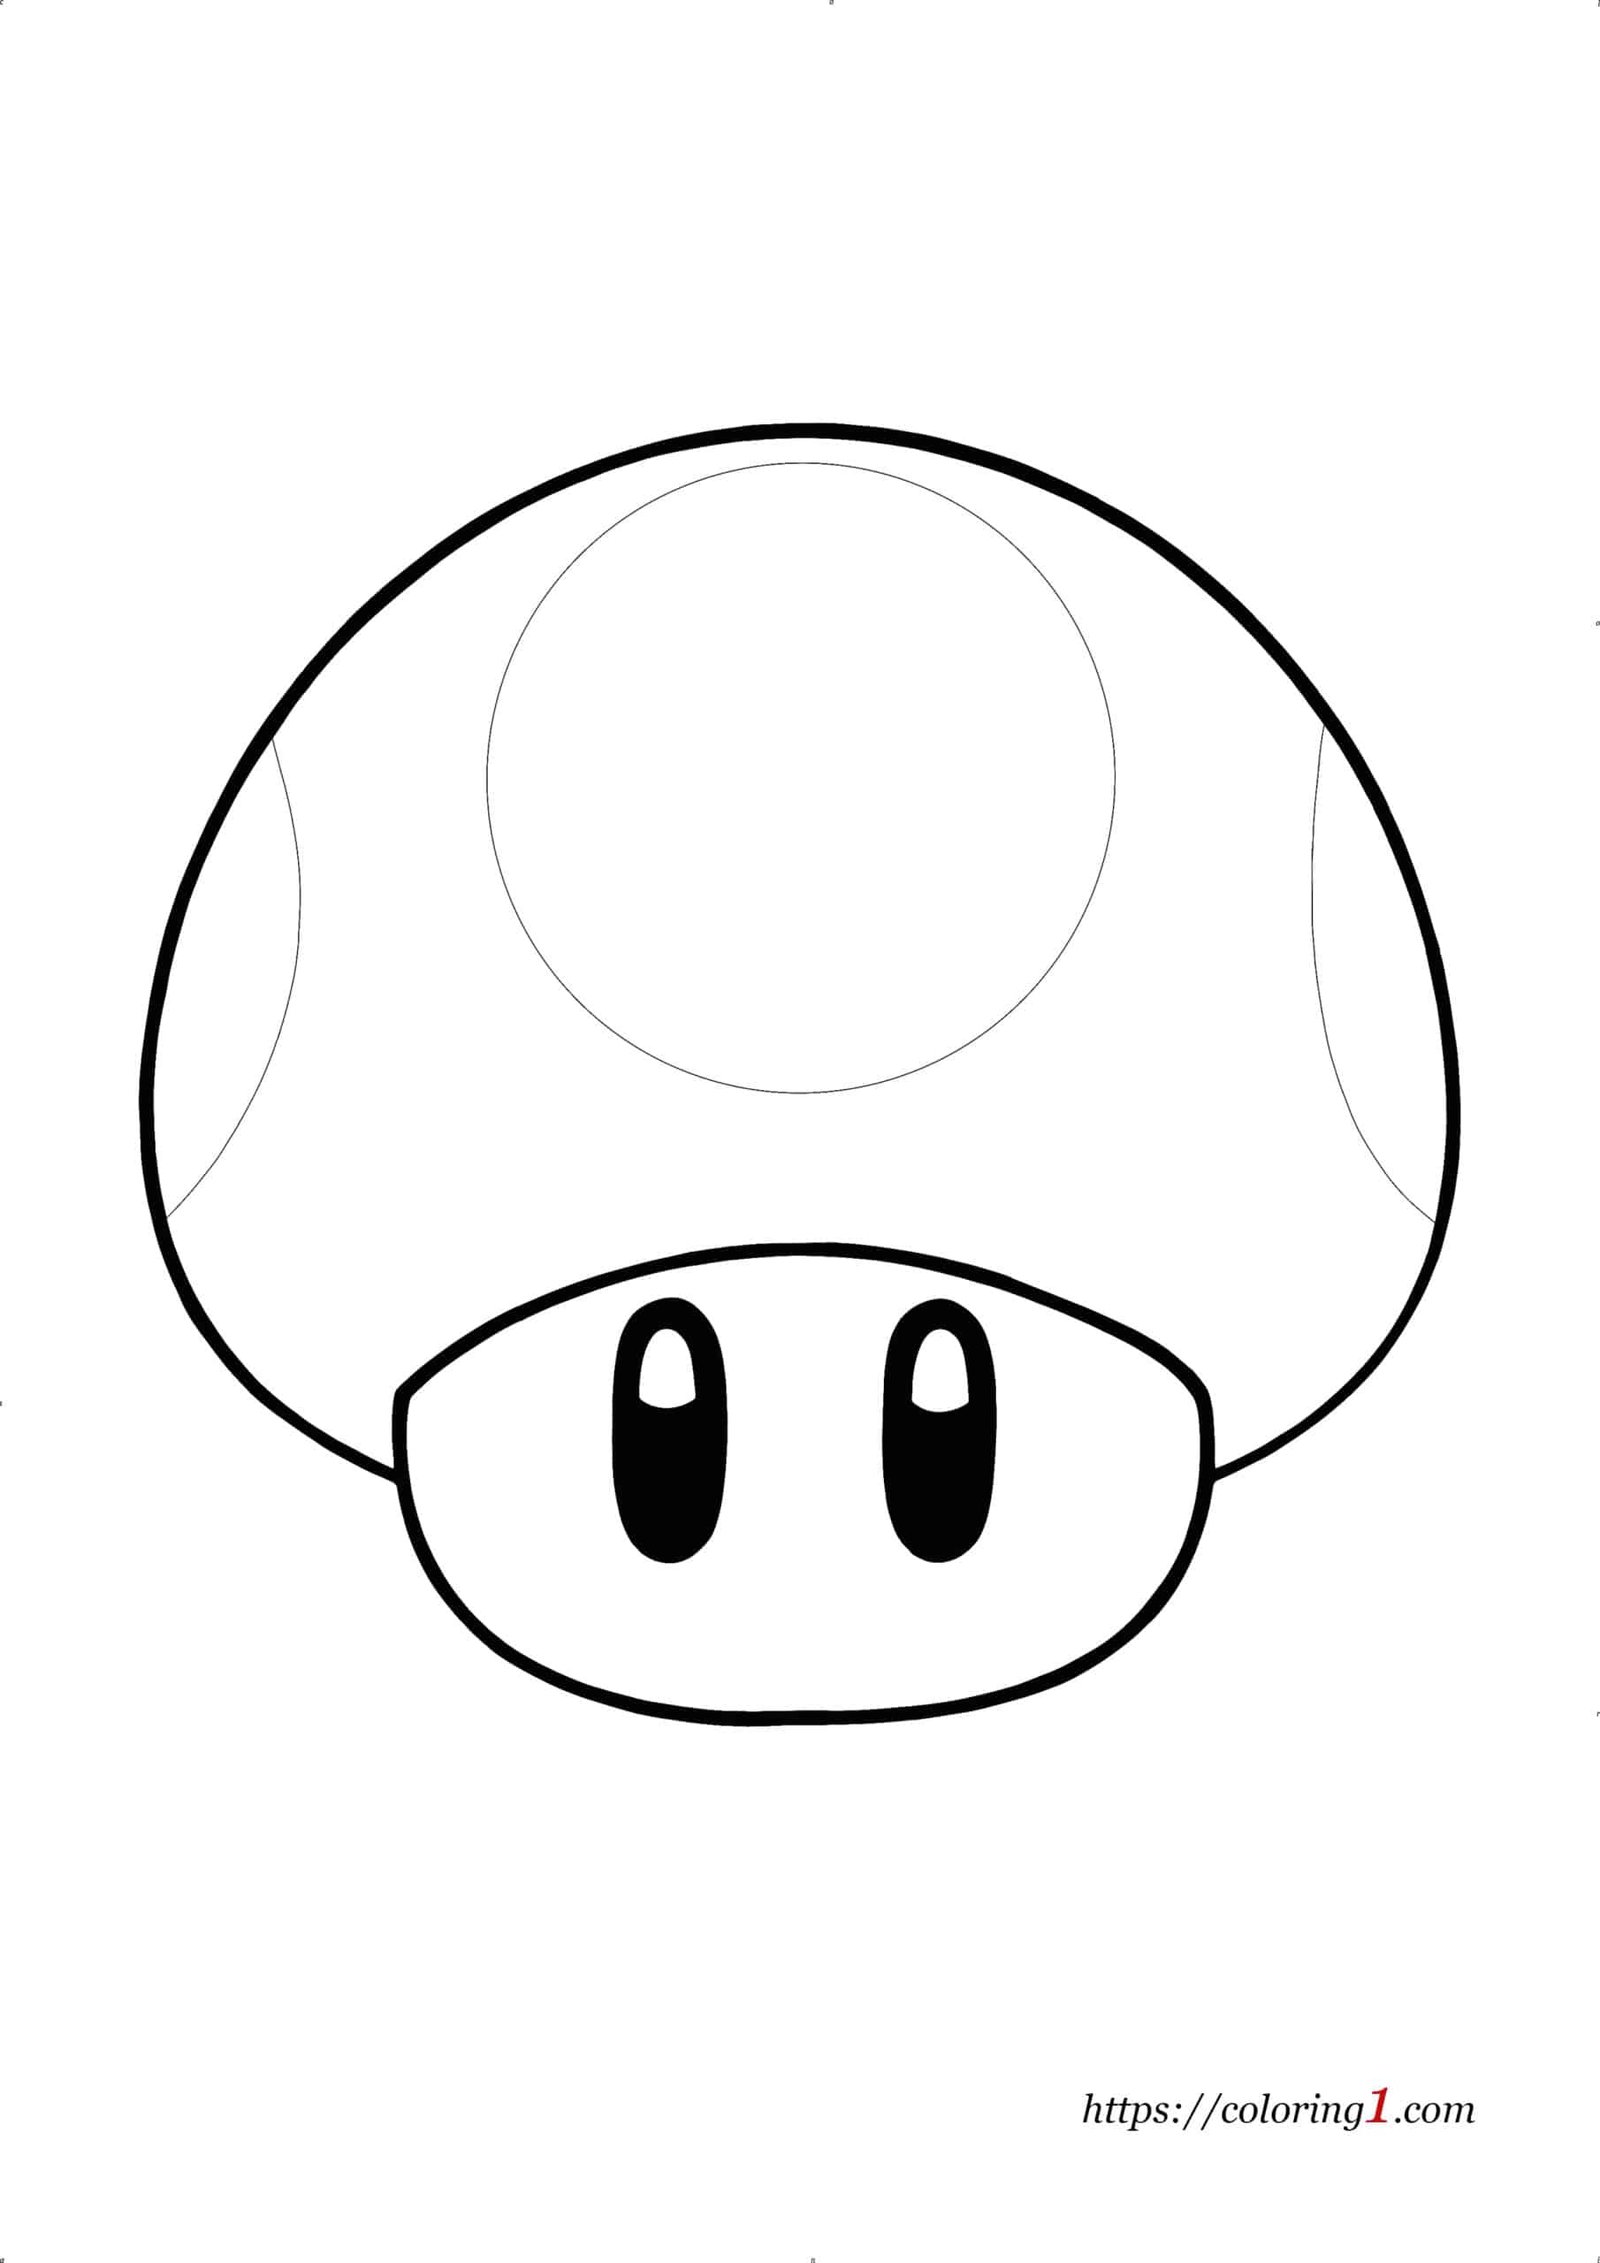 Mario Mushroom coloring page